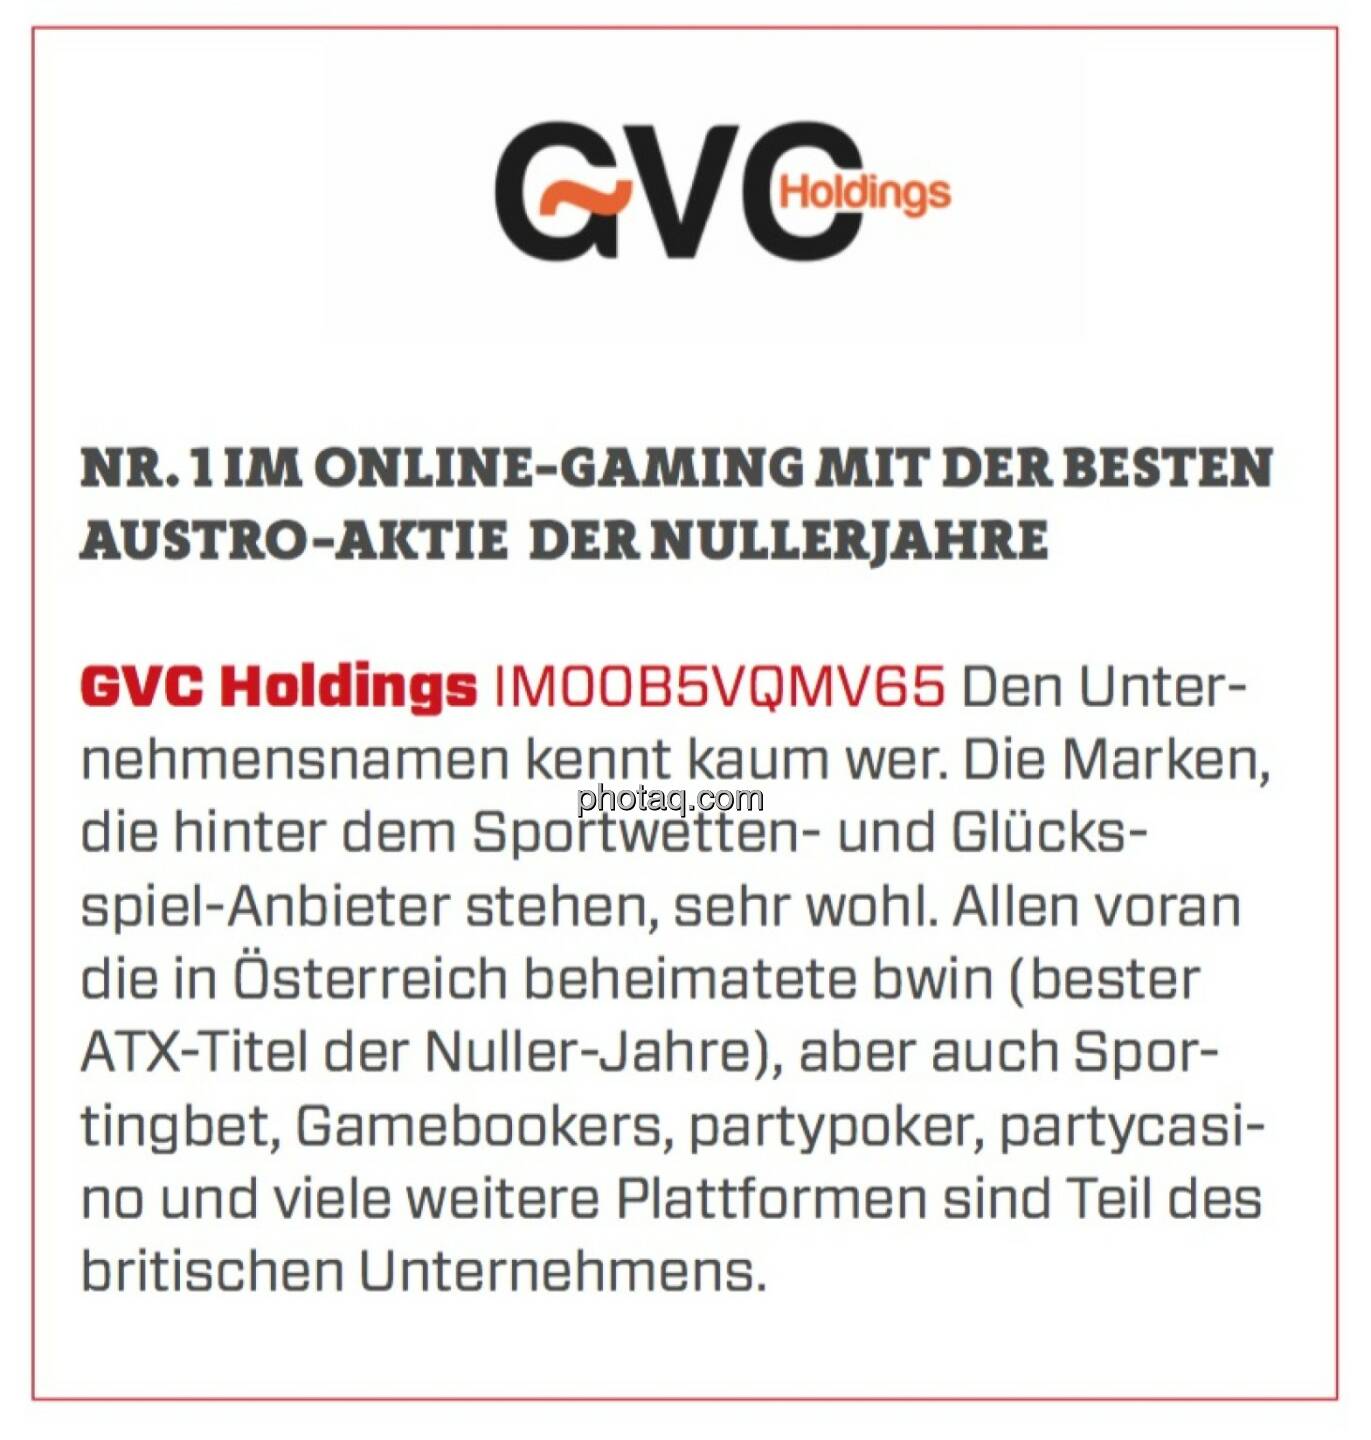 GVC Holdings - Nr. 1 im Online-Gaming mit der besten Austro-Aktie der Nullerjahre: Den Unternehmensnamen kennt kaum wer. Die Marken, die hinter dem Sportwetten- und Glücksspiel-Anbieter stehen, sehr wohl. Allen voran die in Österreich beheimatete bwin (bester ATX-Titel der Nuller-Jahre), aber auch Sportingbet, Gamebookers, partypoker, partycasino und viele weitere Plattformen sind Teil des britischen Unternehmens. 